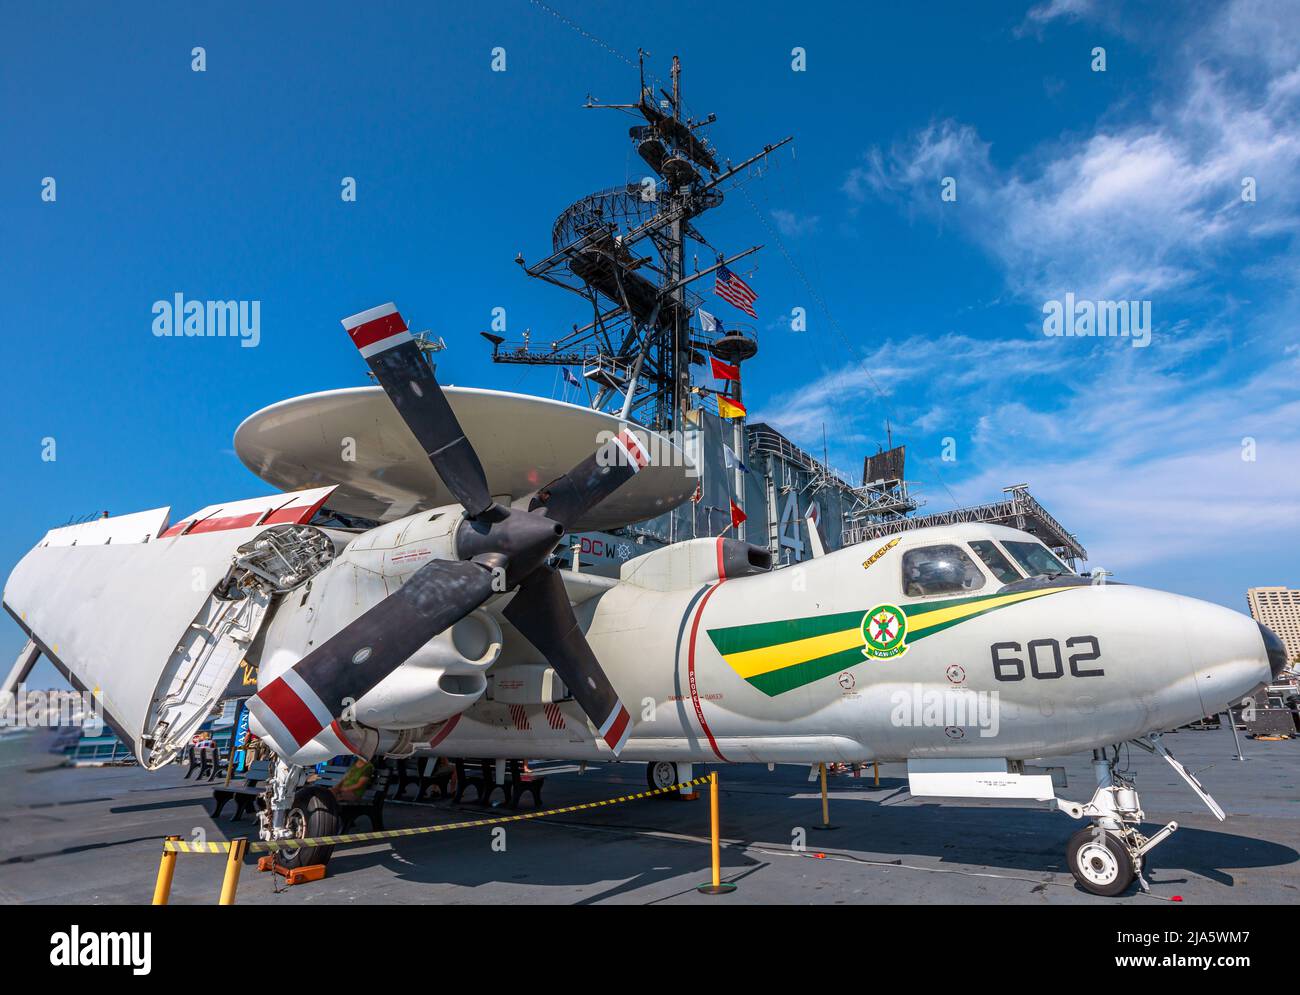 San Diego, California, Stati Uniti d'America - LUGLIO 2018: Northrop Grumman e-2 Hawkeye, velivolo AEW di allarme anticipato aereo del 1950s. US Midway americano Foto Stock